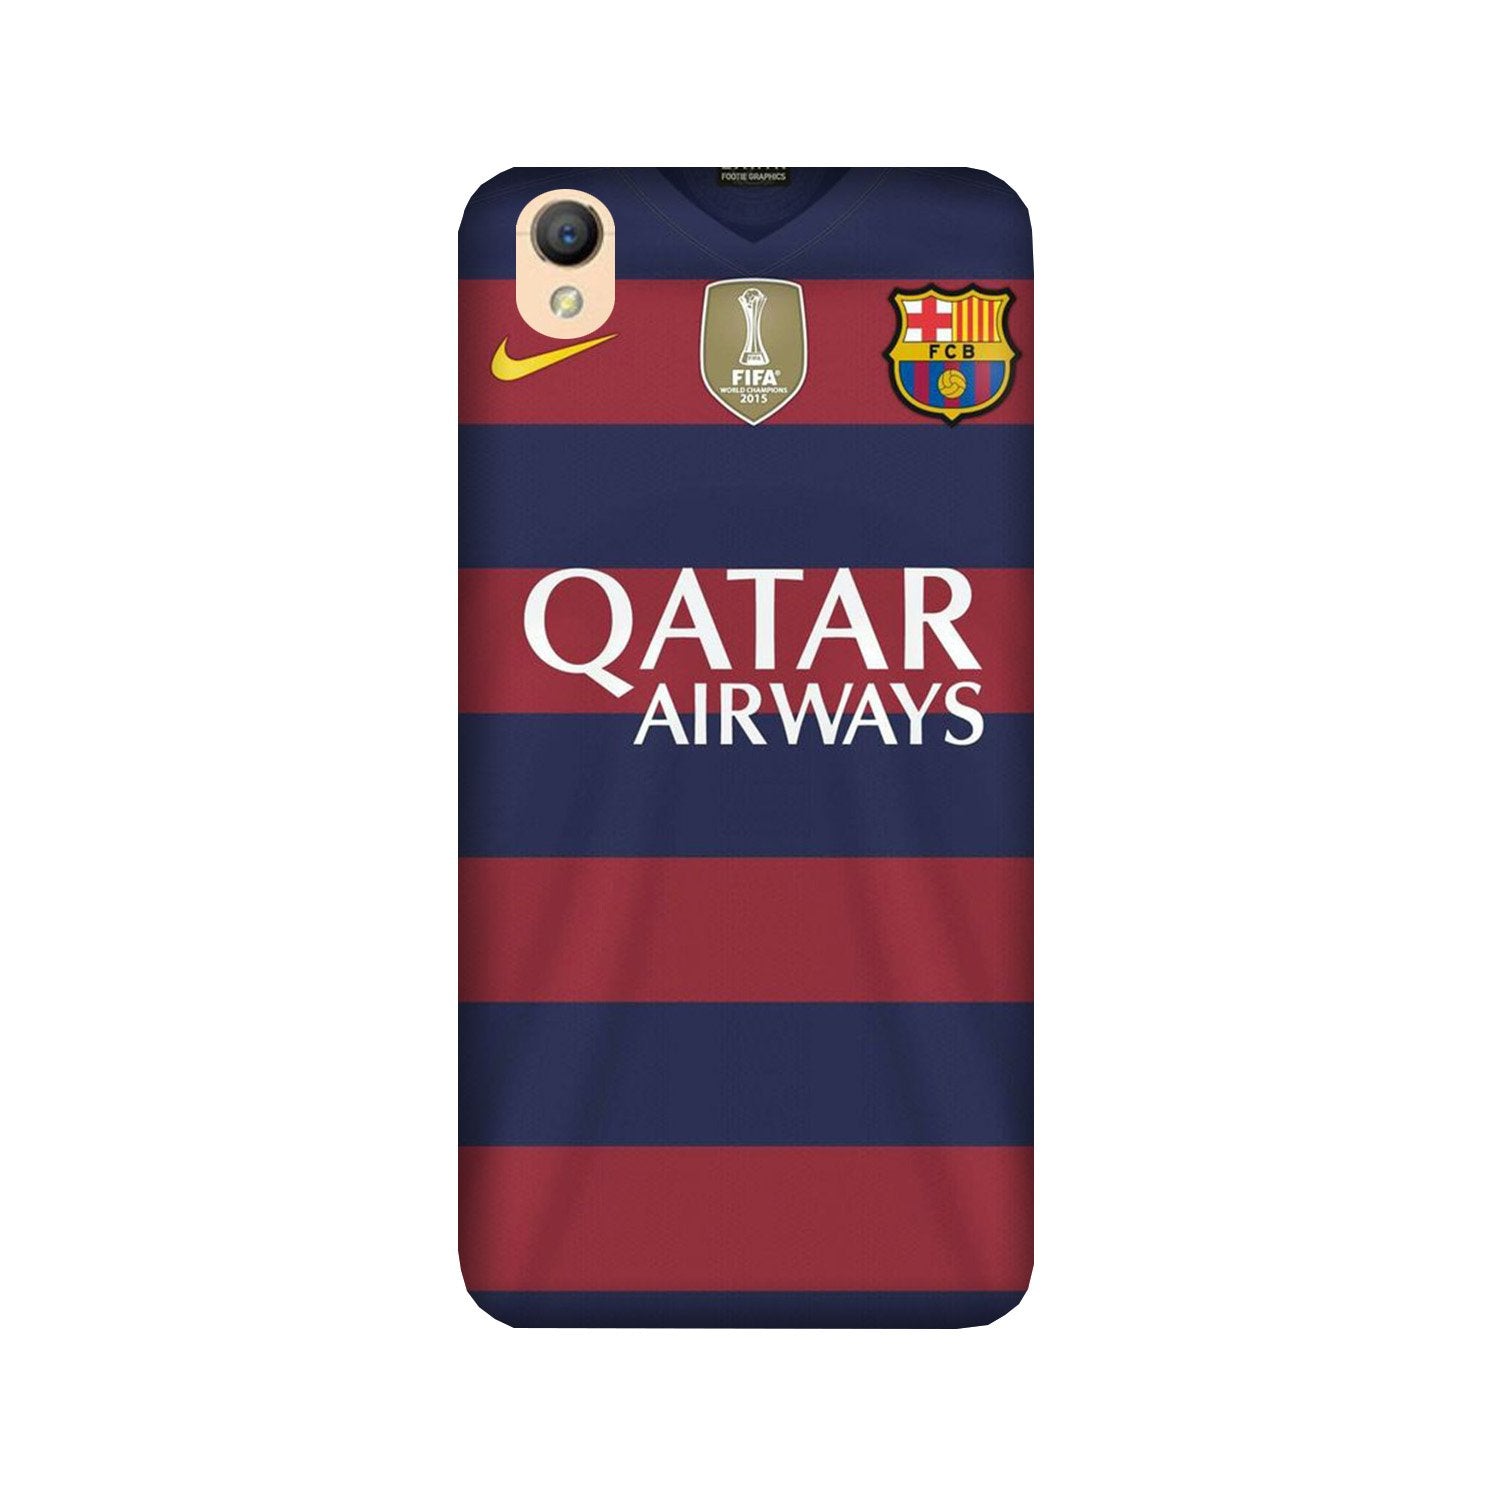 Qatar Airways Case for Oppo A37(Design - 160)